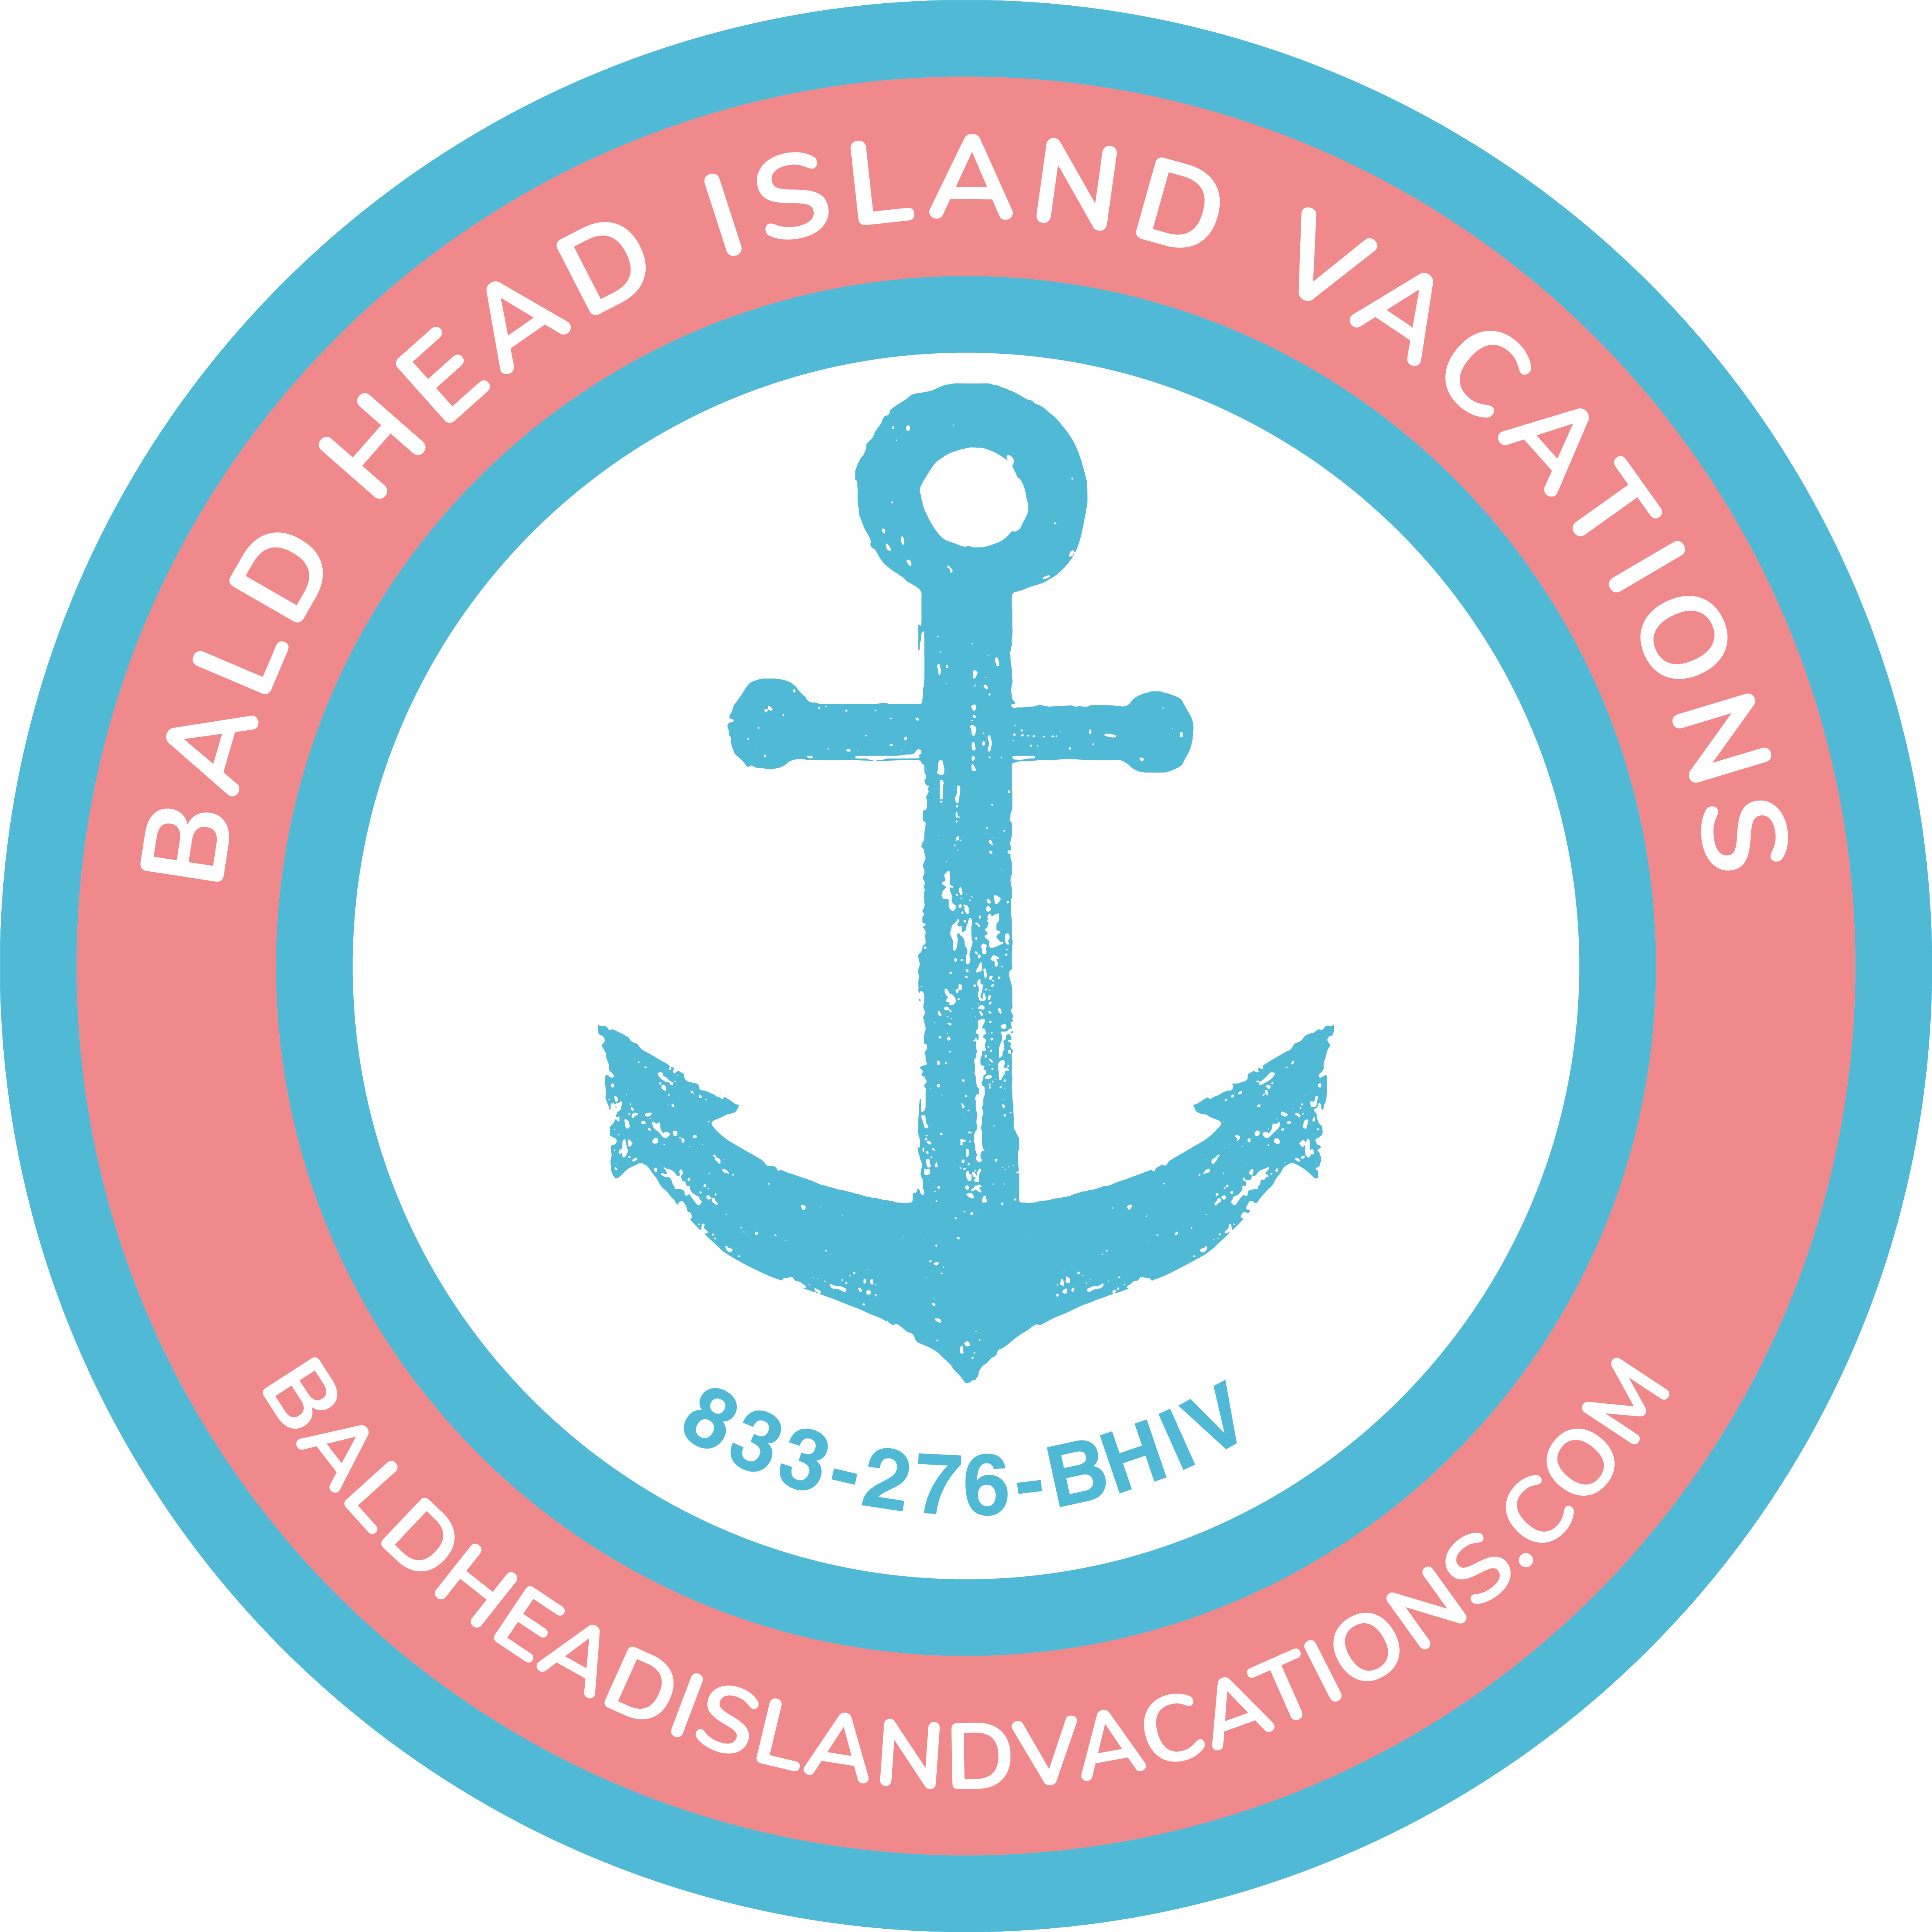 Bald Head Island Vacations